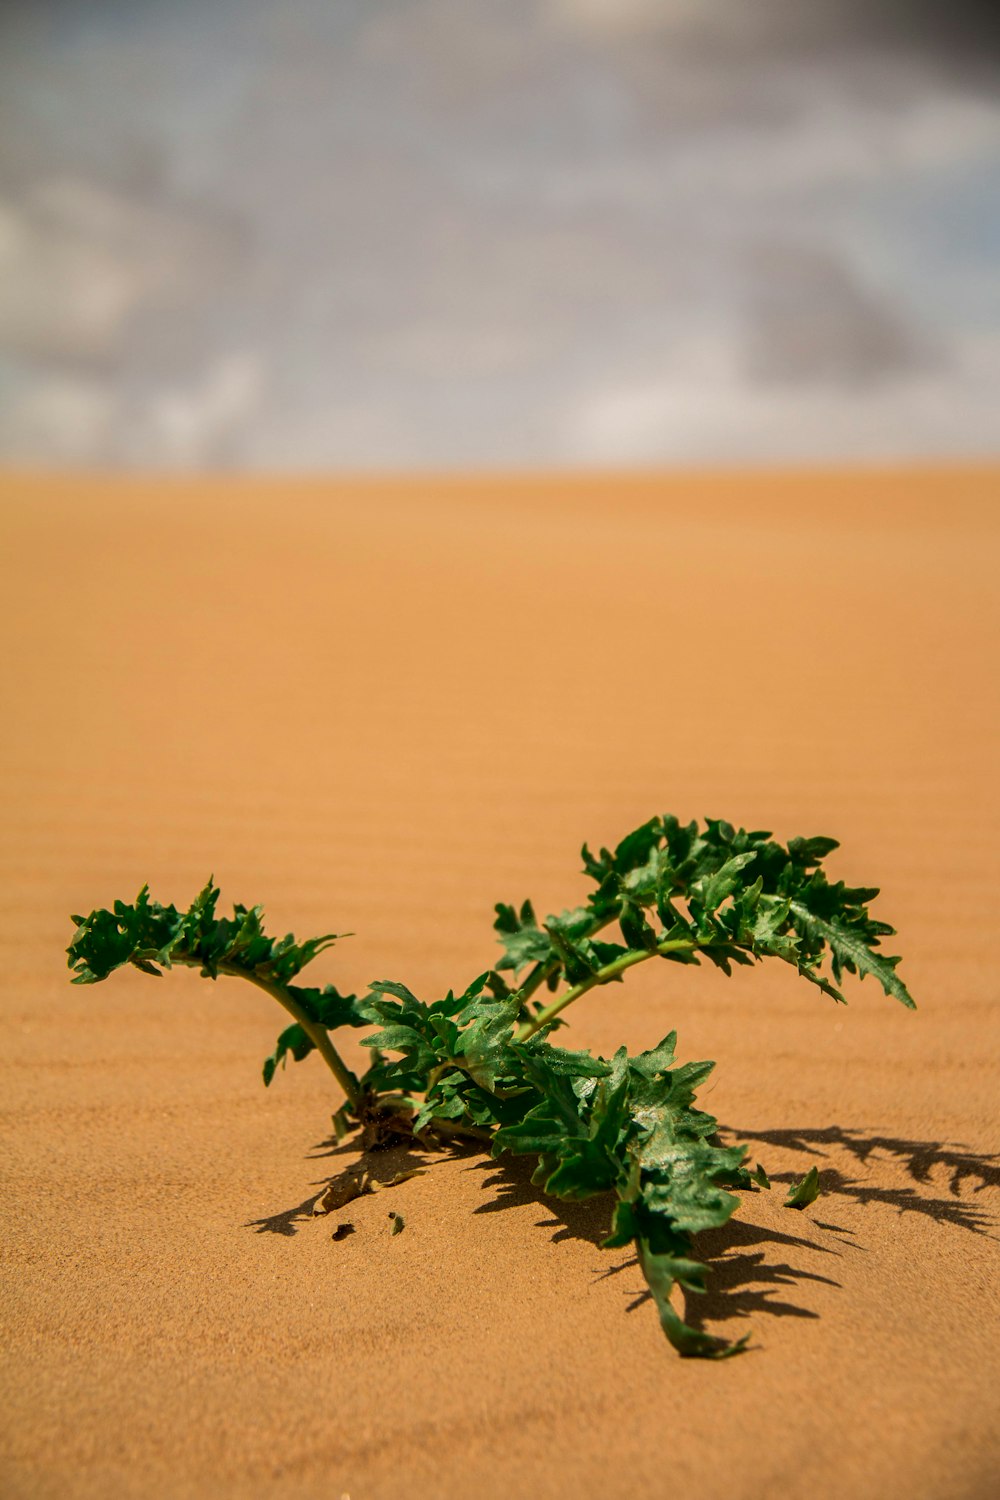 pianta verde su sabbia marrone durante il giorno